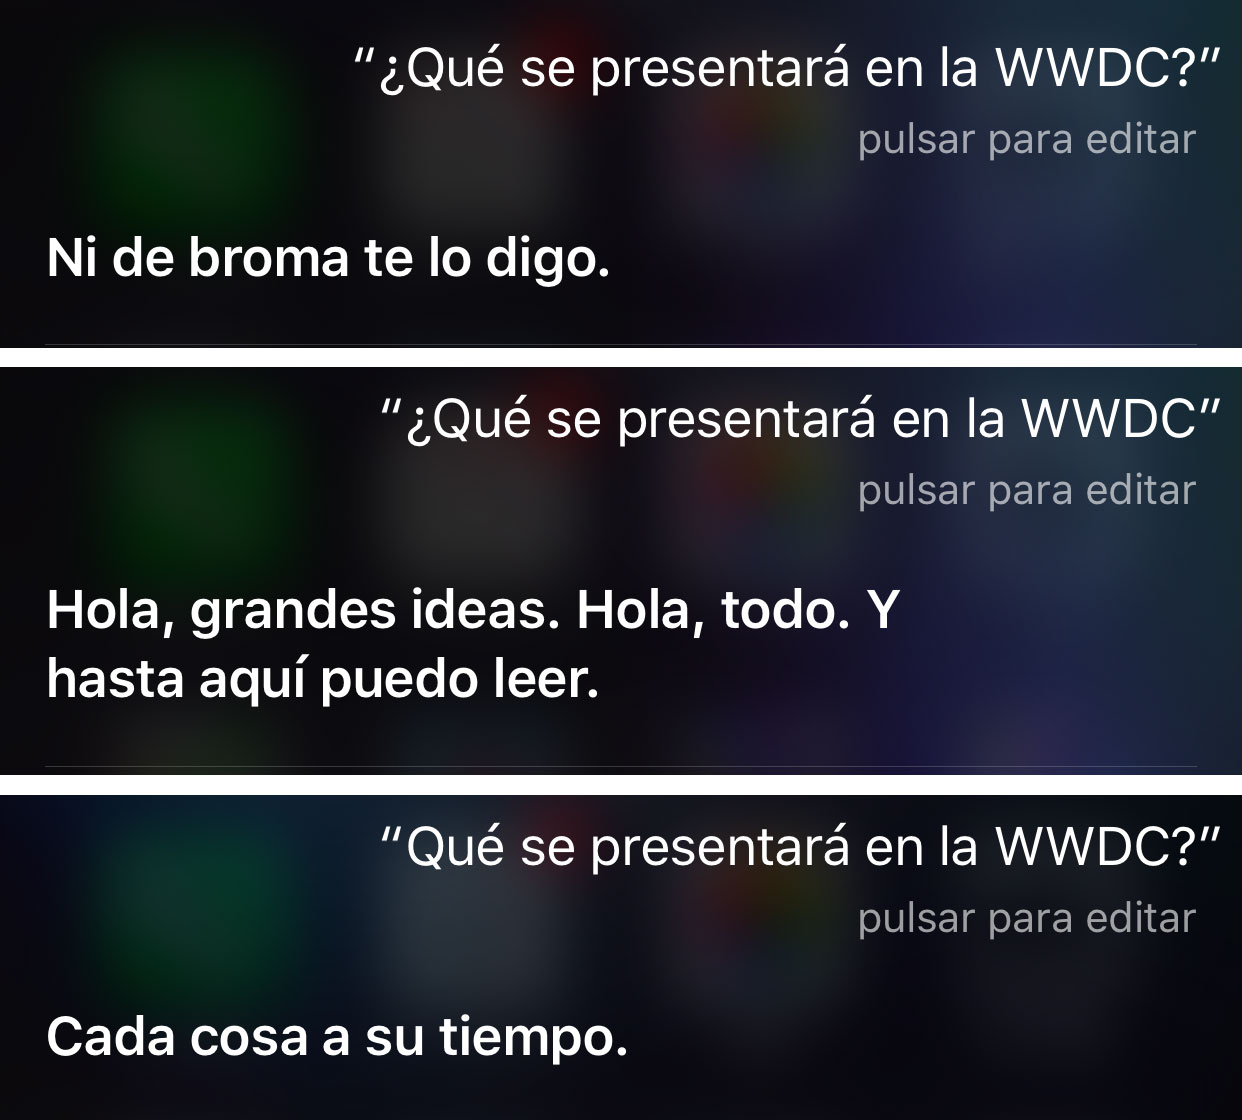 Siri contesta sobre la WWDC 2016